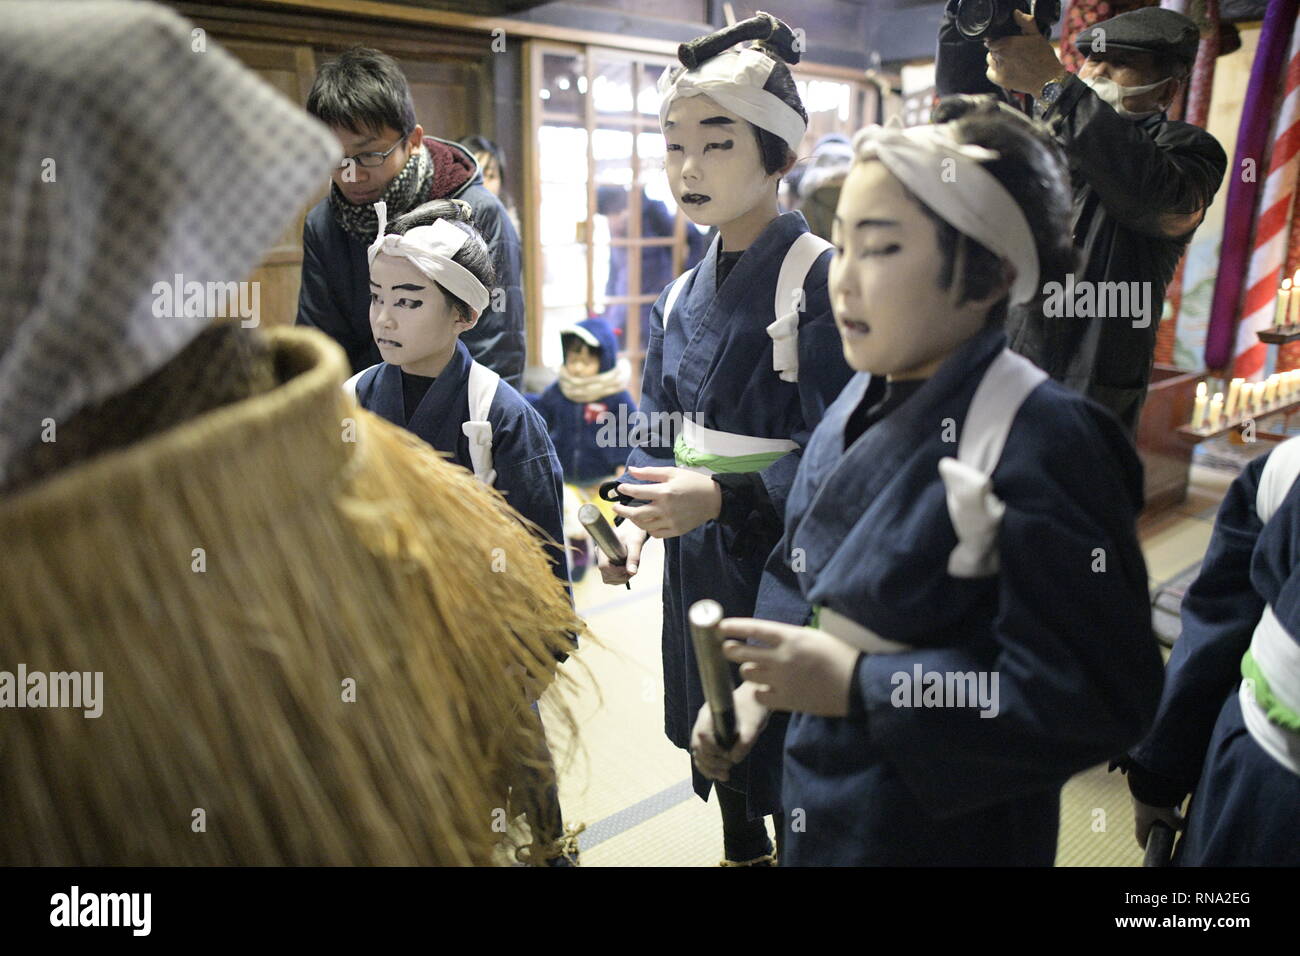 SAKATA, Yamagata, Giappone - 17 febbraio: Kuromori studenti elementari si prepara dietro le quinte durante il Kabuki Kuromori prestazioni a Kuromori, Sakata, prefettura di Yamagata, Giappone nel febbraio 17, 2019. Il Agriculturally kabuki a tema è stata eseguita per oltre 280 anni in modo continuativo dalla metà dell'era di Edo, come una dedizione al Kuromori Hie santuario di Sakata città. Kabuki Kuromori è agricoltori prestazioni Kabuki eseguita per gli dèi entro il santuario durante il freddo estremo di Febbraio in concomitanza con il nuovo anno lunare, e come tale è anche indicato come la danza nella neve o la danza a freddo. È consi Foto Stock